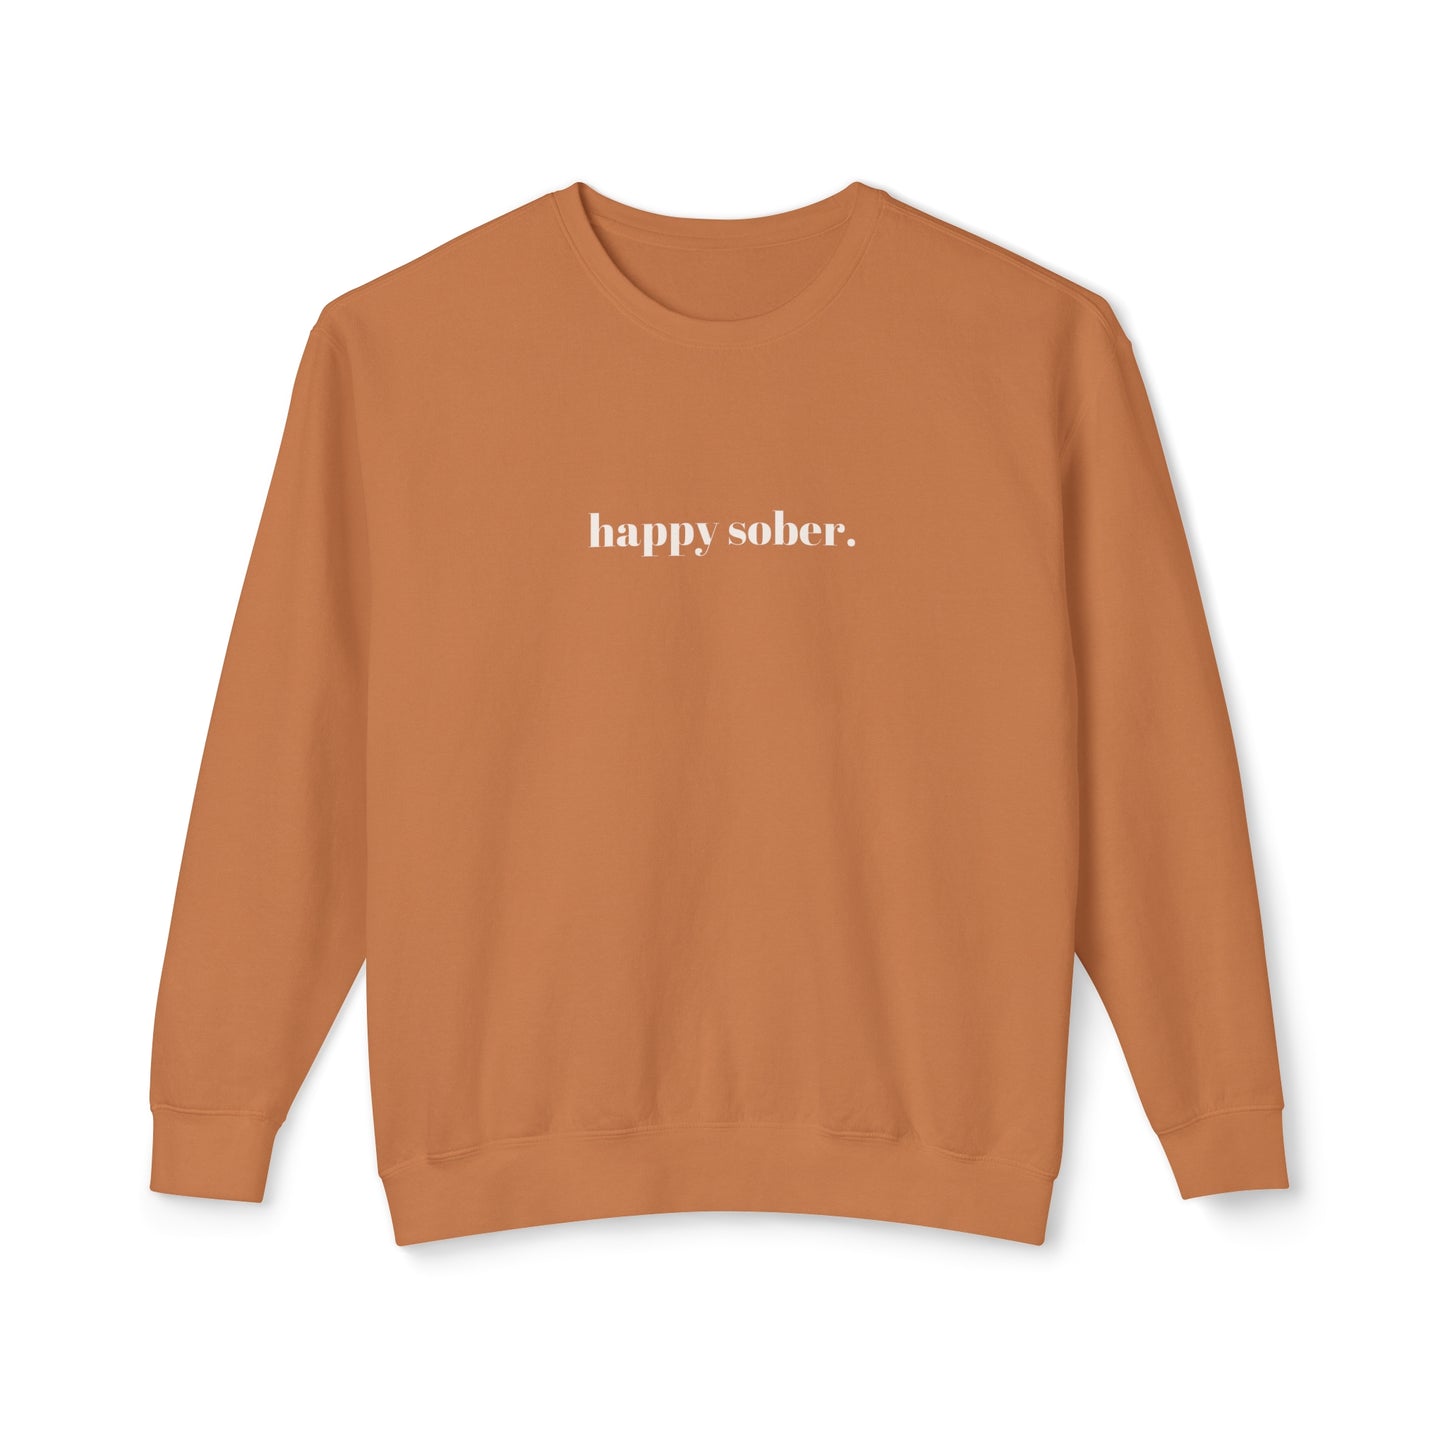 happy sober. sweatshirt